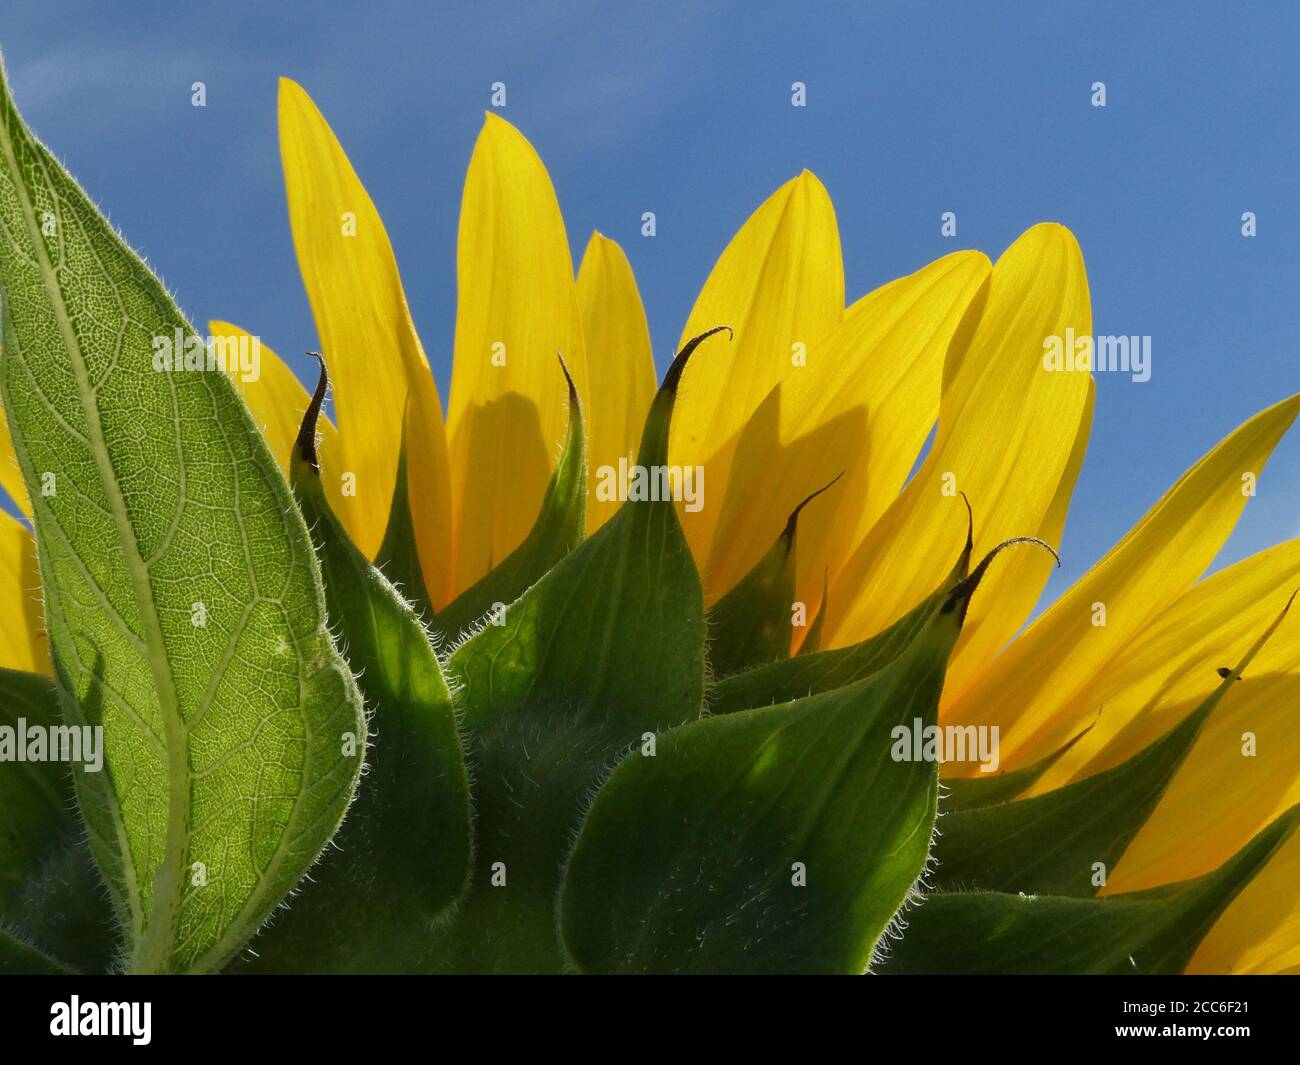 Sunflower field in bloom. Stock Photo